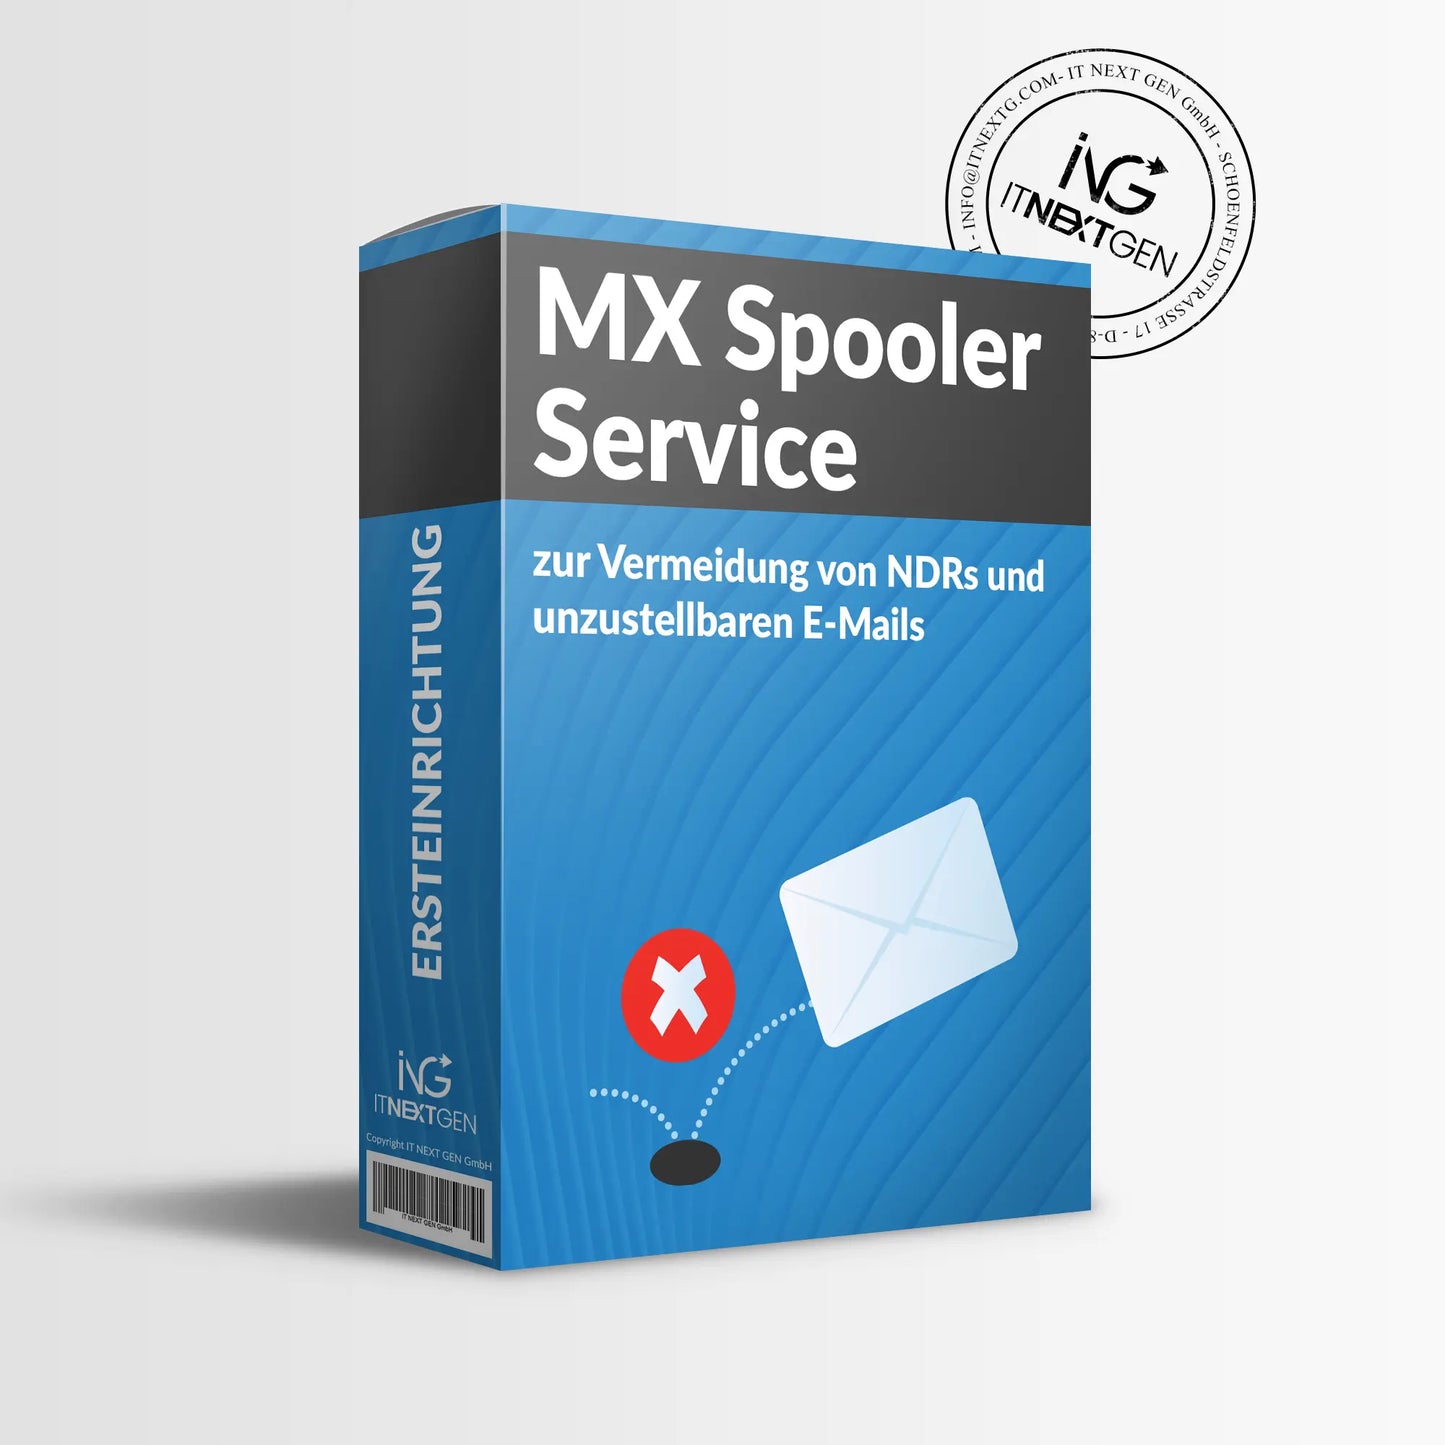 MX Spooler Service zur Vermeidung von NDRs und unzustellbaren E-Mails